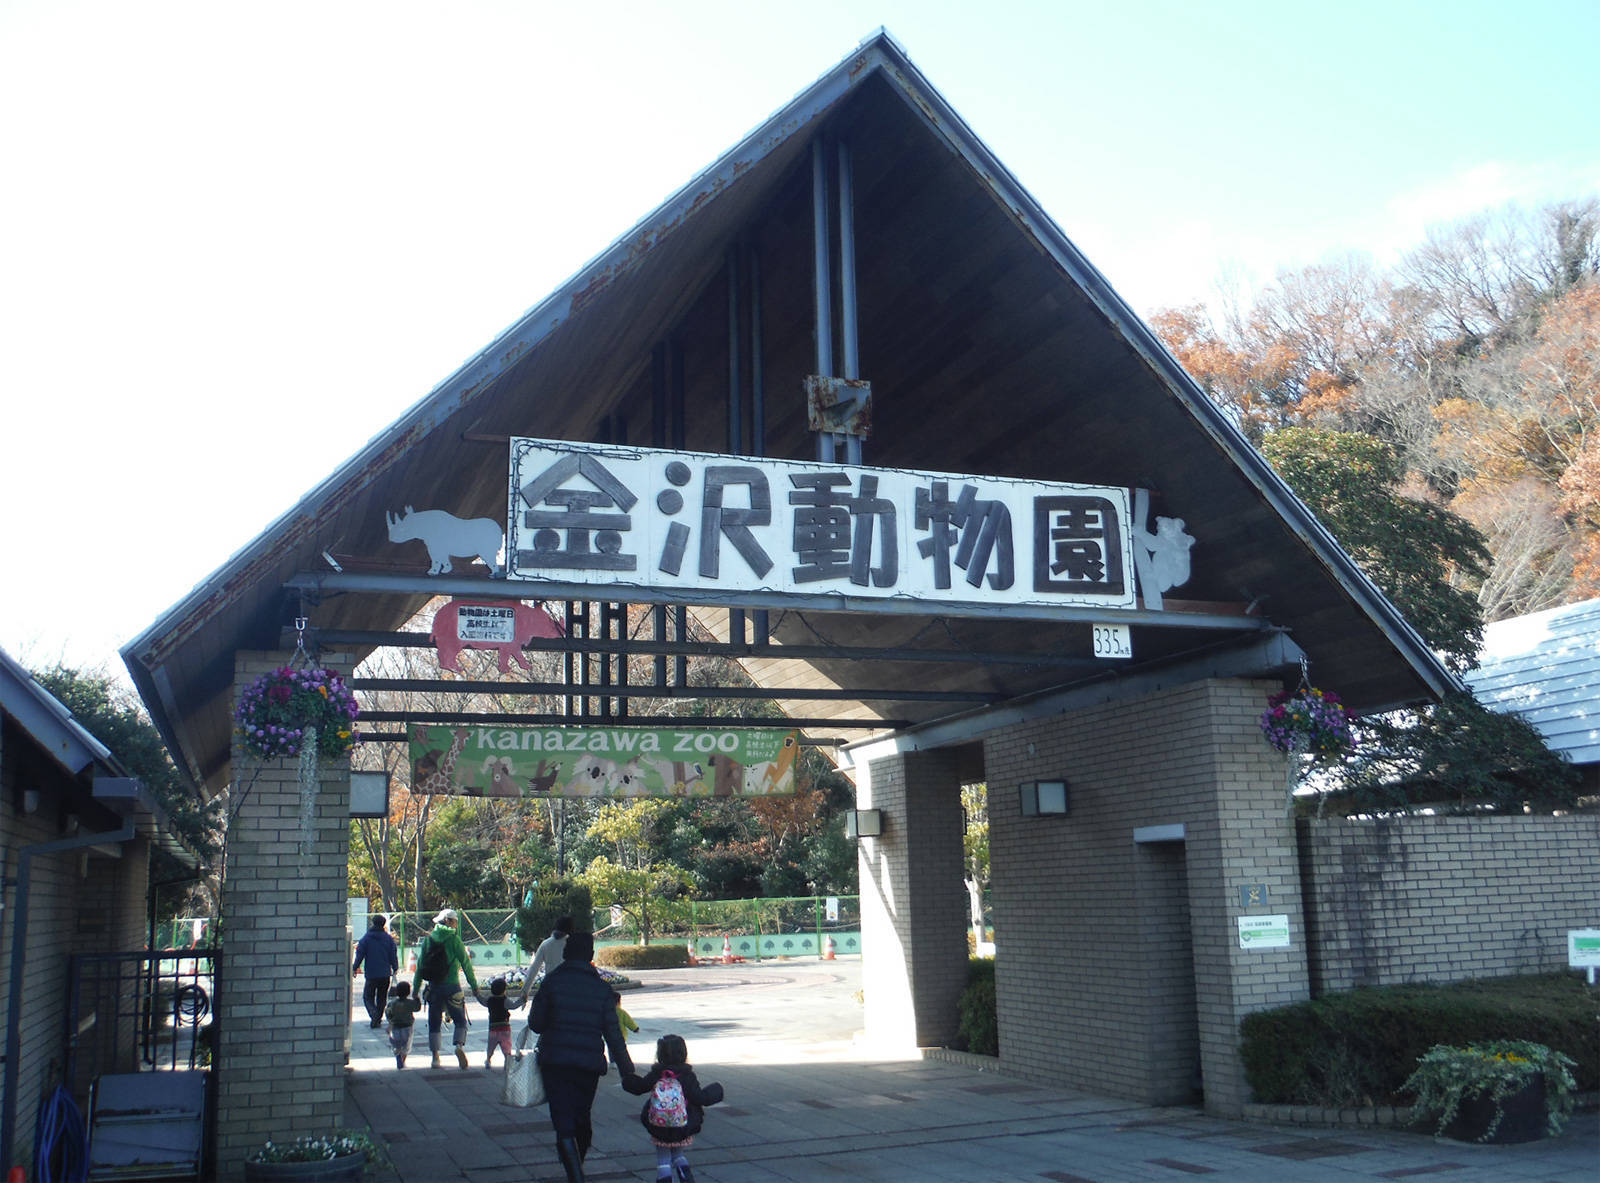 金沢自然公園 金沢動物園公式サイト 公益財団法人 横浜市緑の協会